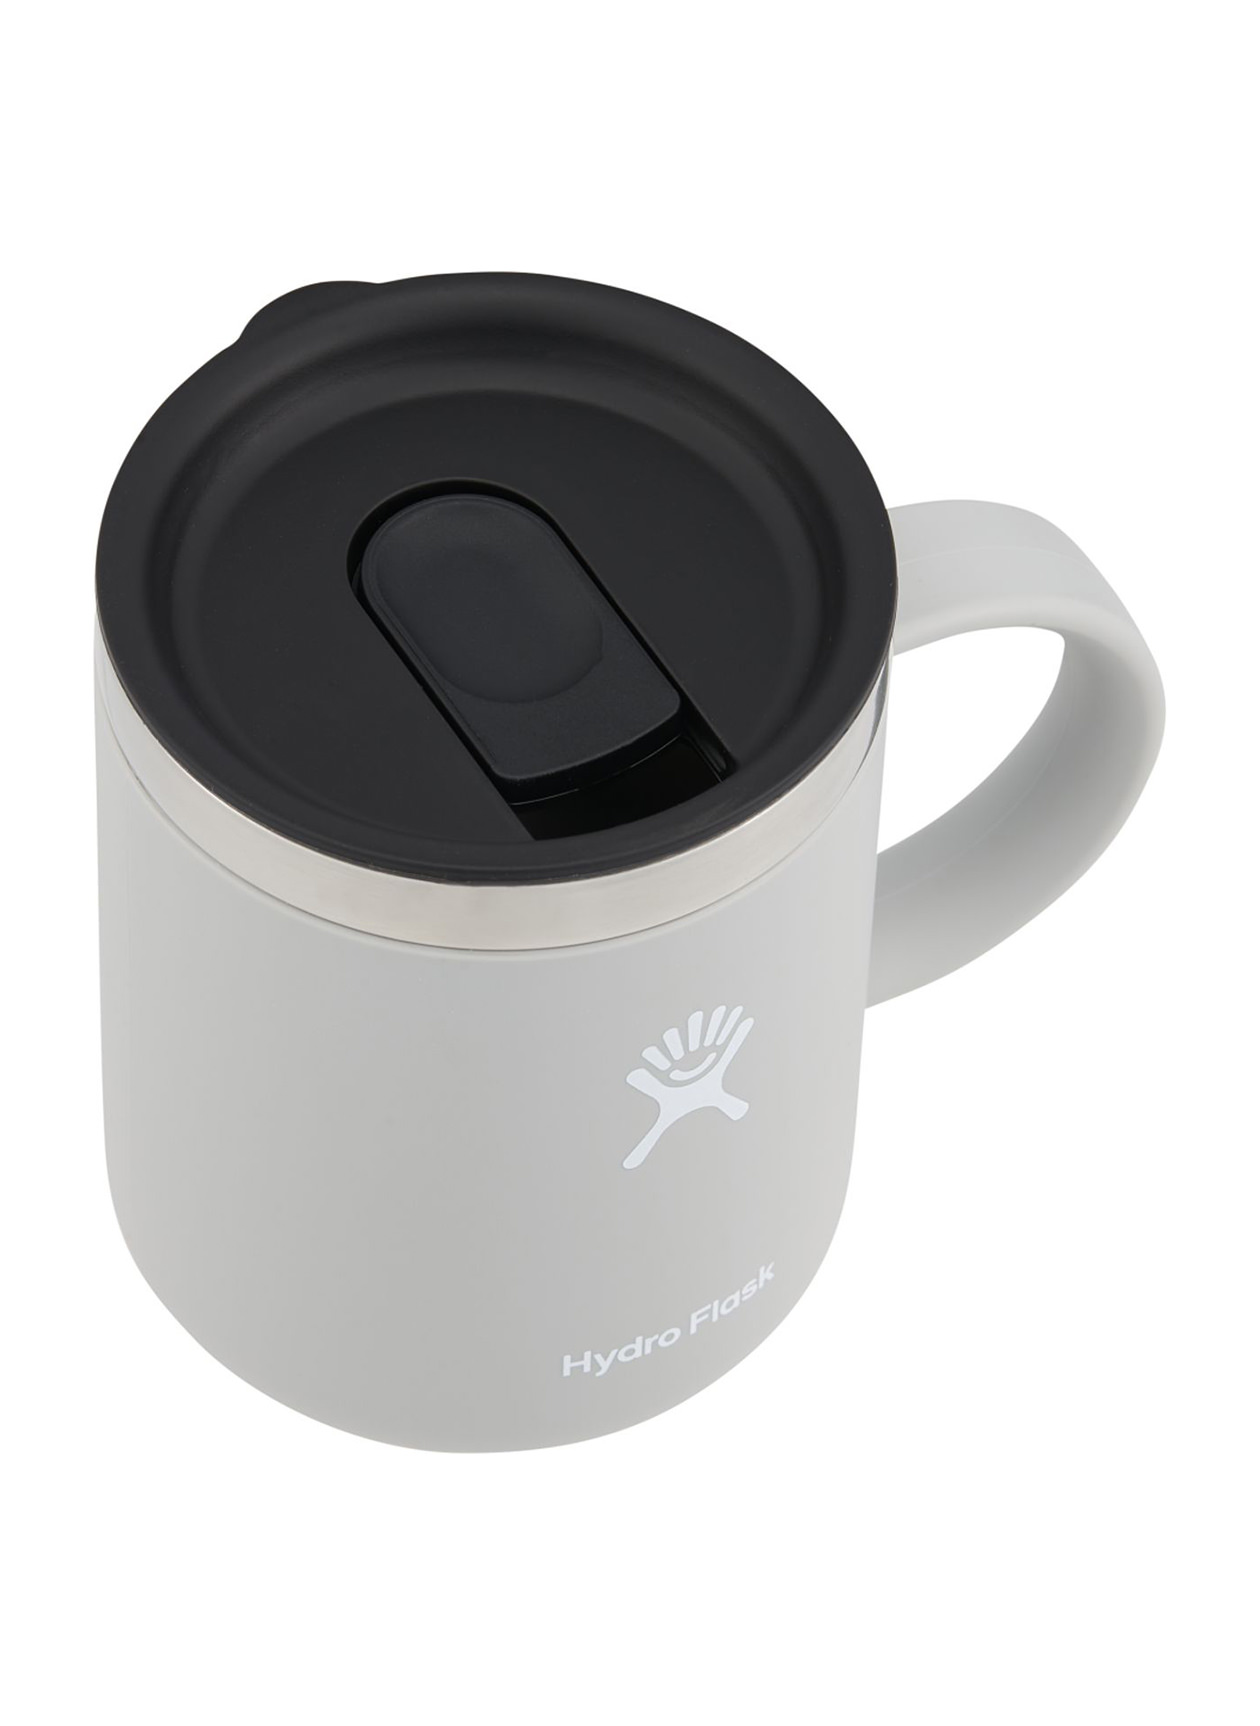 Hydro Flask Birch Coffee Mug 12oz.